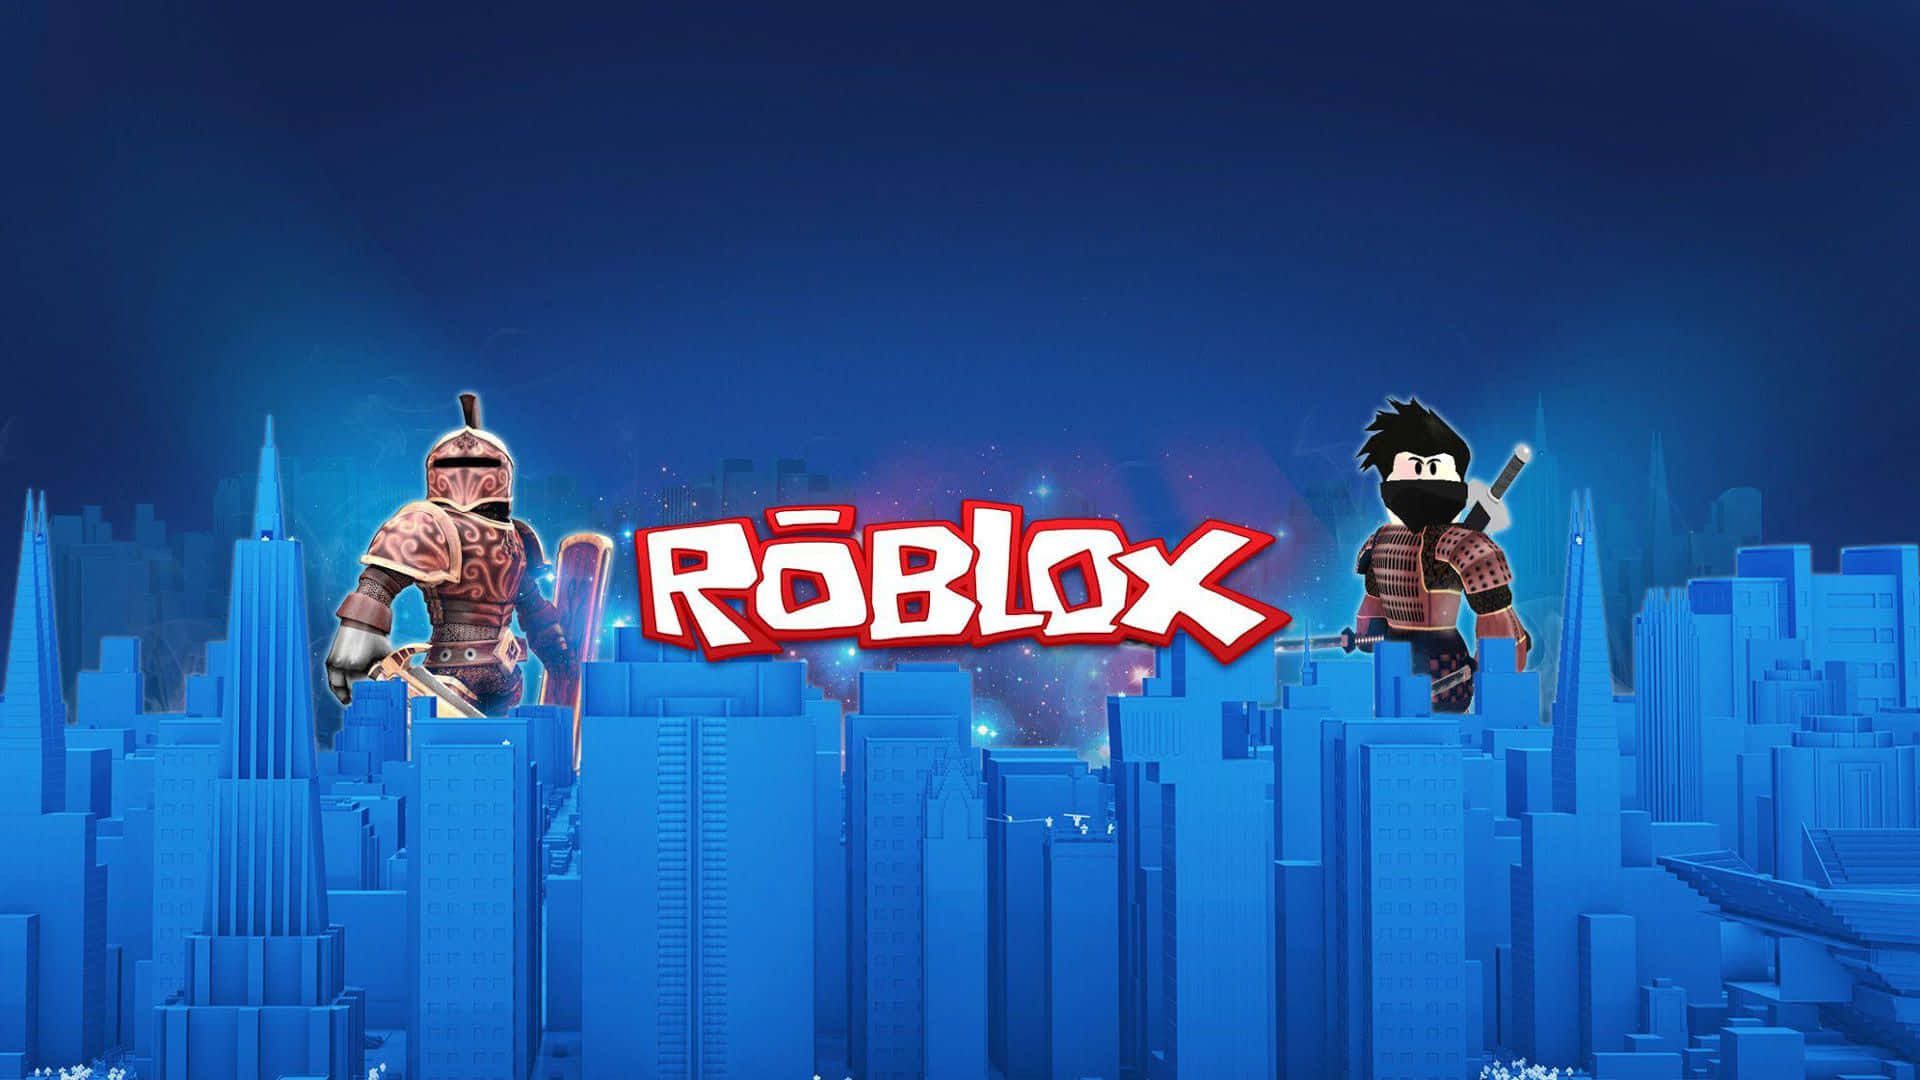 Hình nền nhân vật Roblox miễn phí: Bạn muốn sở hữu một hình nền nhân vật Roblox để trang trí màn hình máy tính? Chẳng cần phải lo lắng về giá, vì chúng tôi đã cập nhật rất nhiều hình nền nhân vật Roblox miễn phí, mỗi ngày bạn có thể download một thứ hoàn toàn mới.